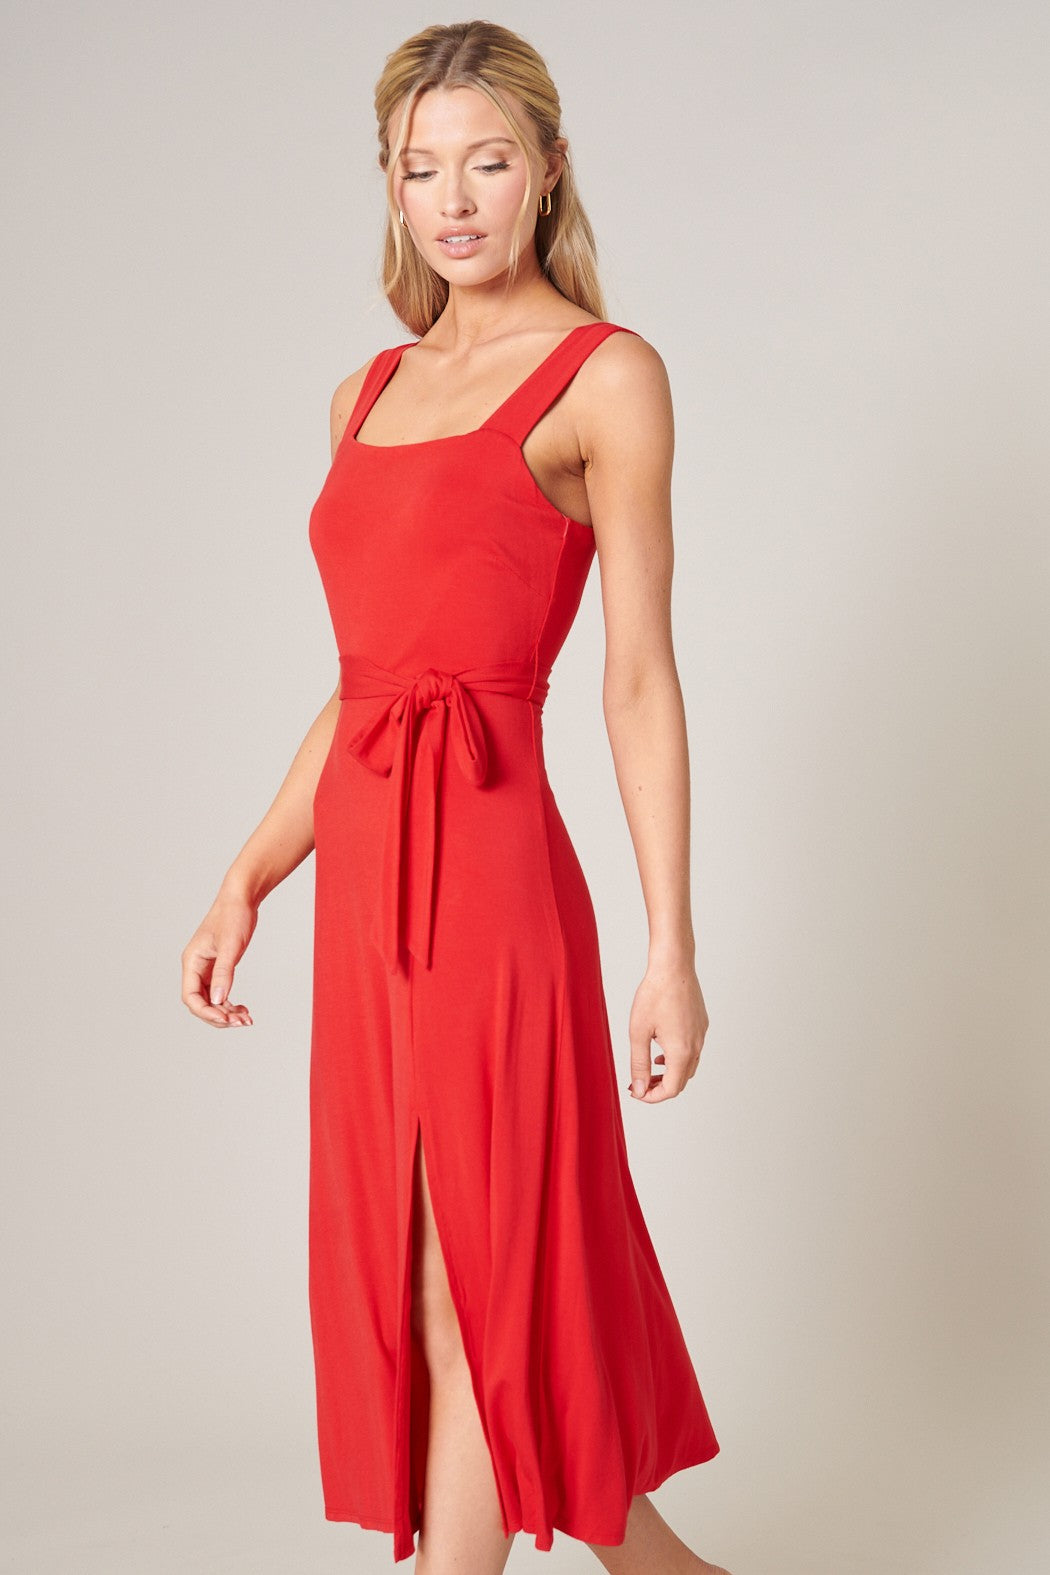 Dress Midi – Knit Sleeveless Mariana Sugarlips Jersey